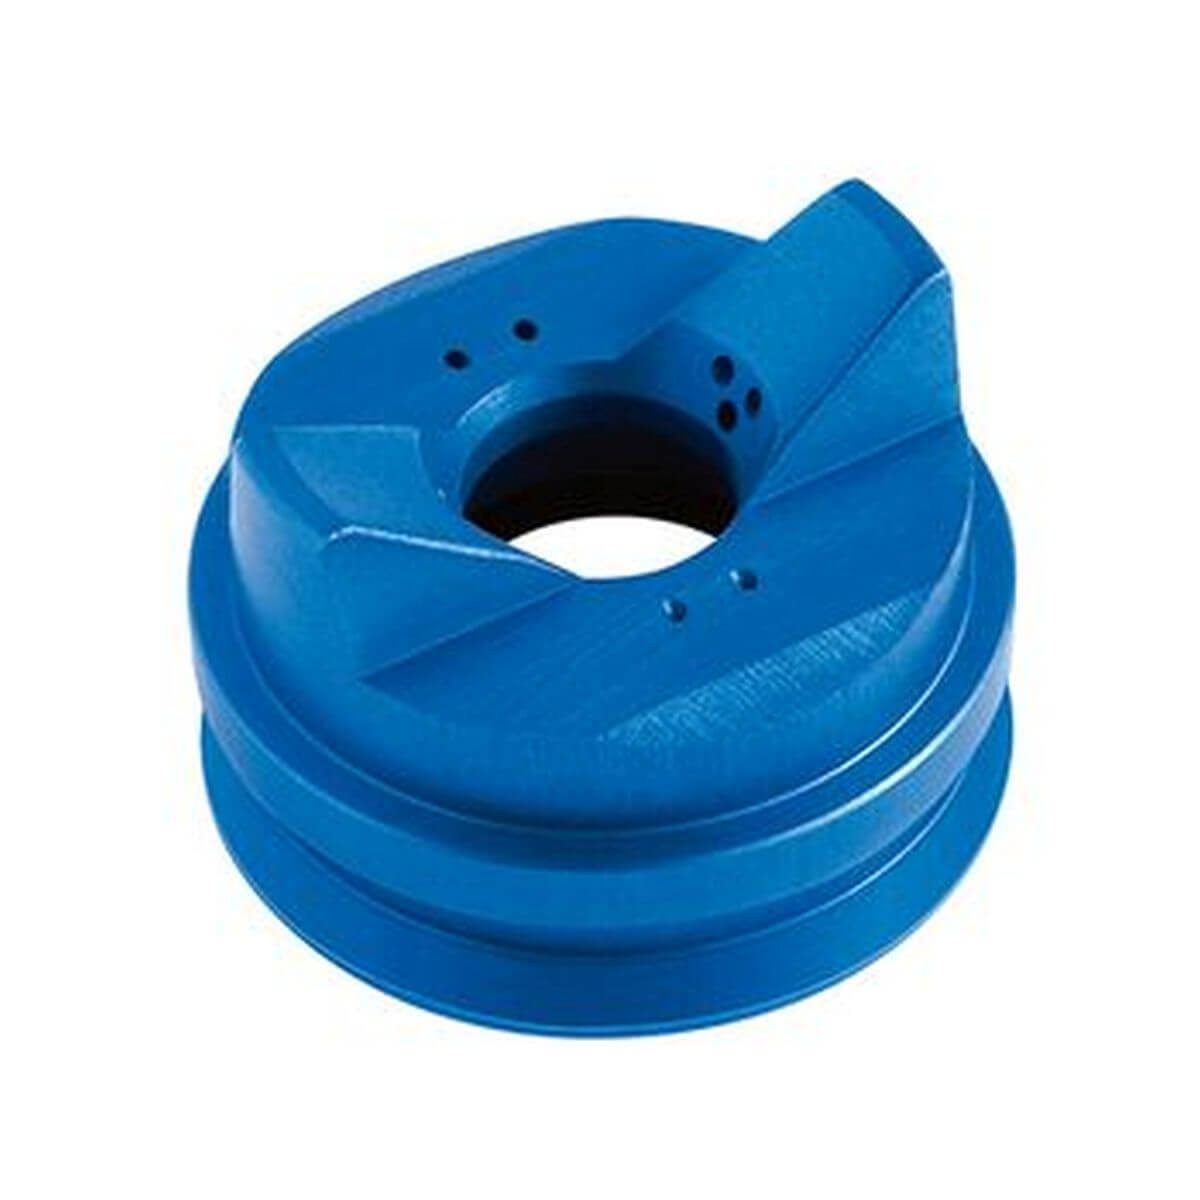 WAGNER Luftkappe blau für wasserverdünnbare Materialien | für AirCoat Pistolen